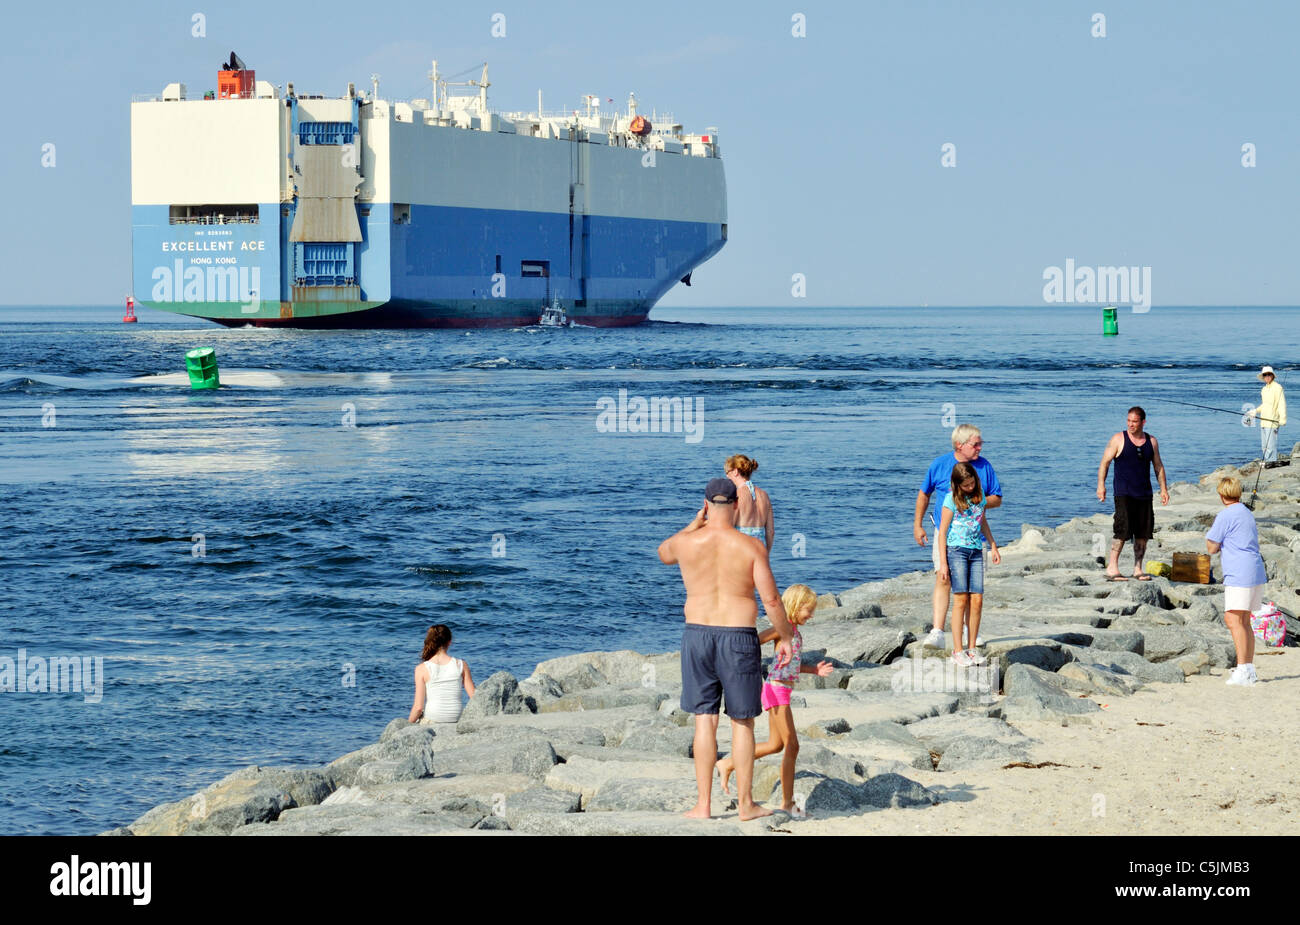 Car carrier Frachtschiff ausgezeichnete Ace Verlassen der Cape Cod Canal in den Schacht für das offene Meer mit Menschen auf der Jetty in Badekleidung zu beobachten. USA Stockfoto